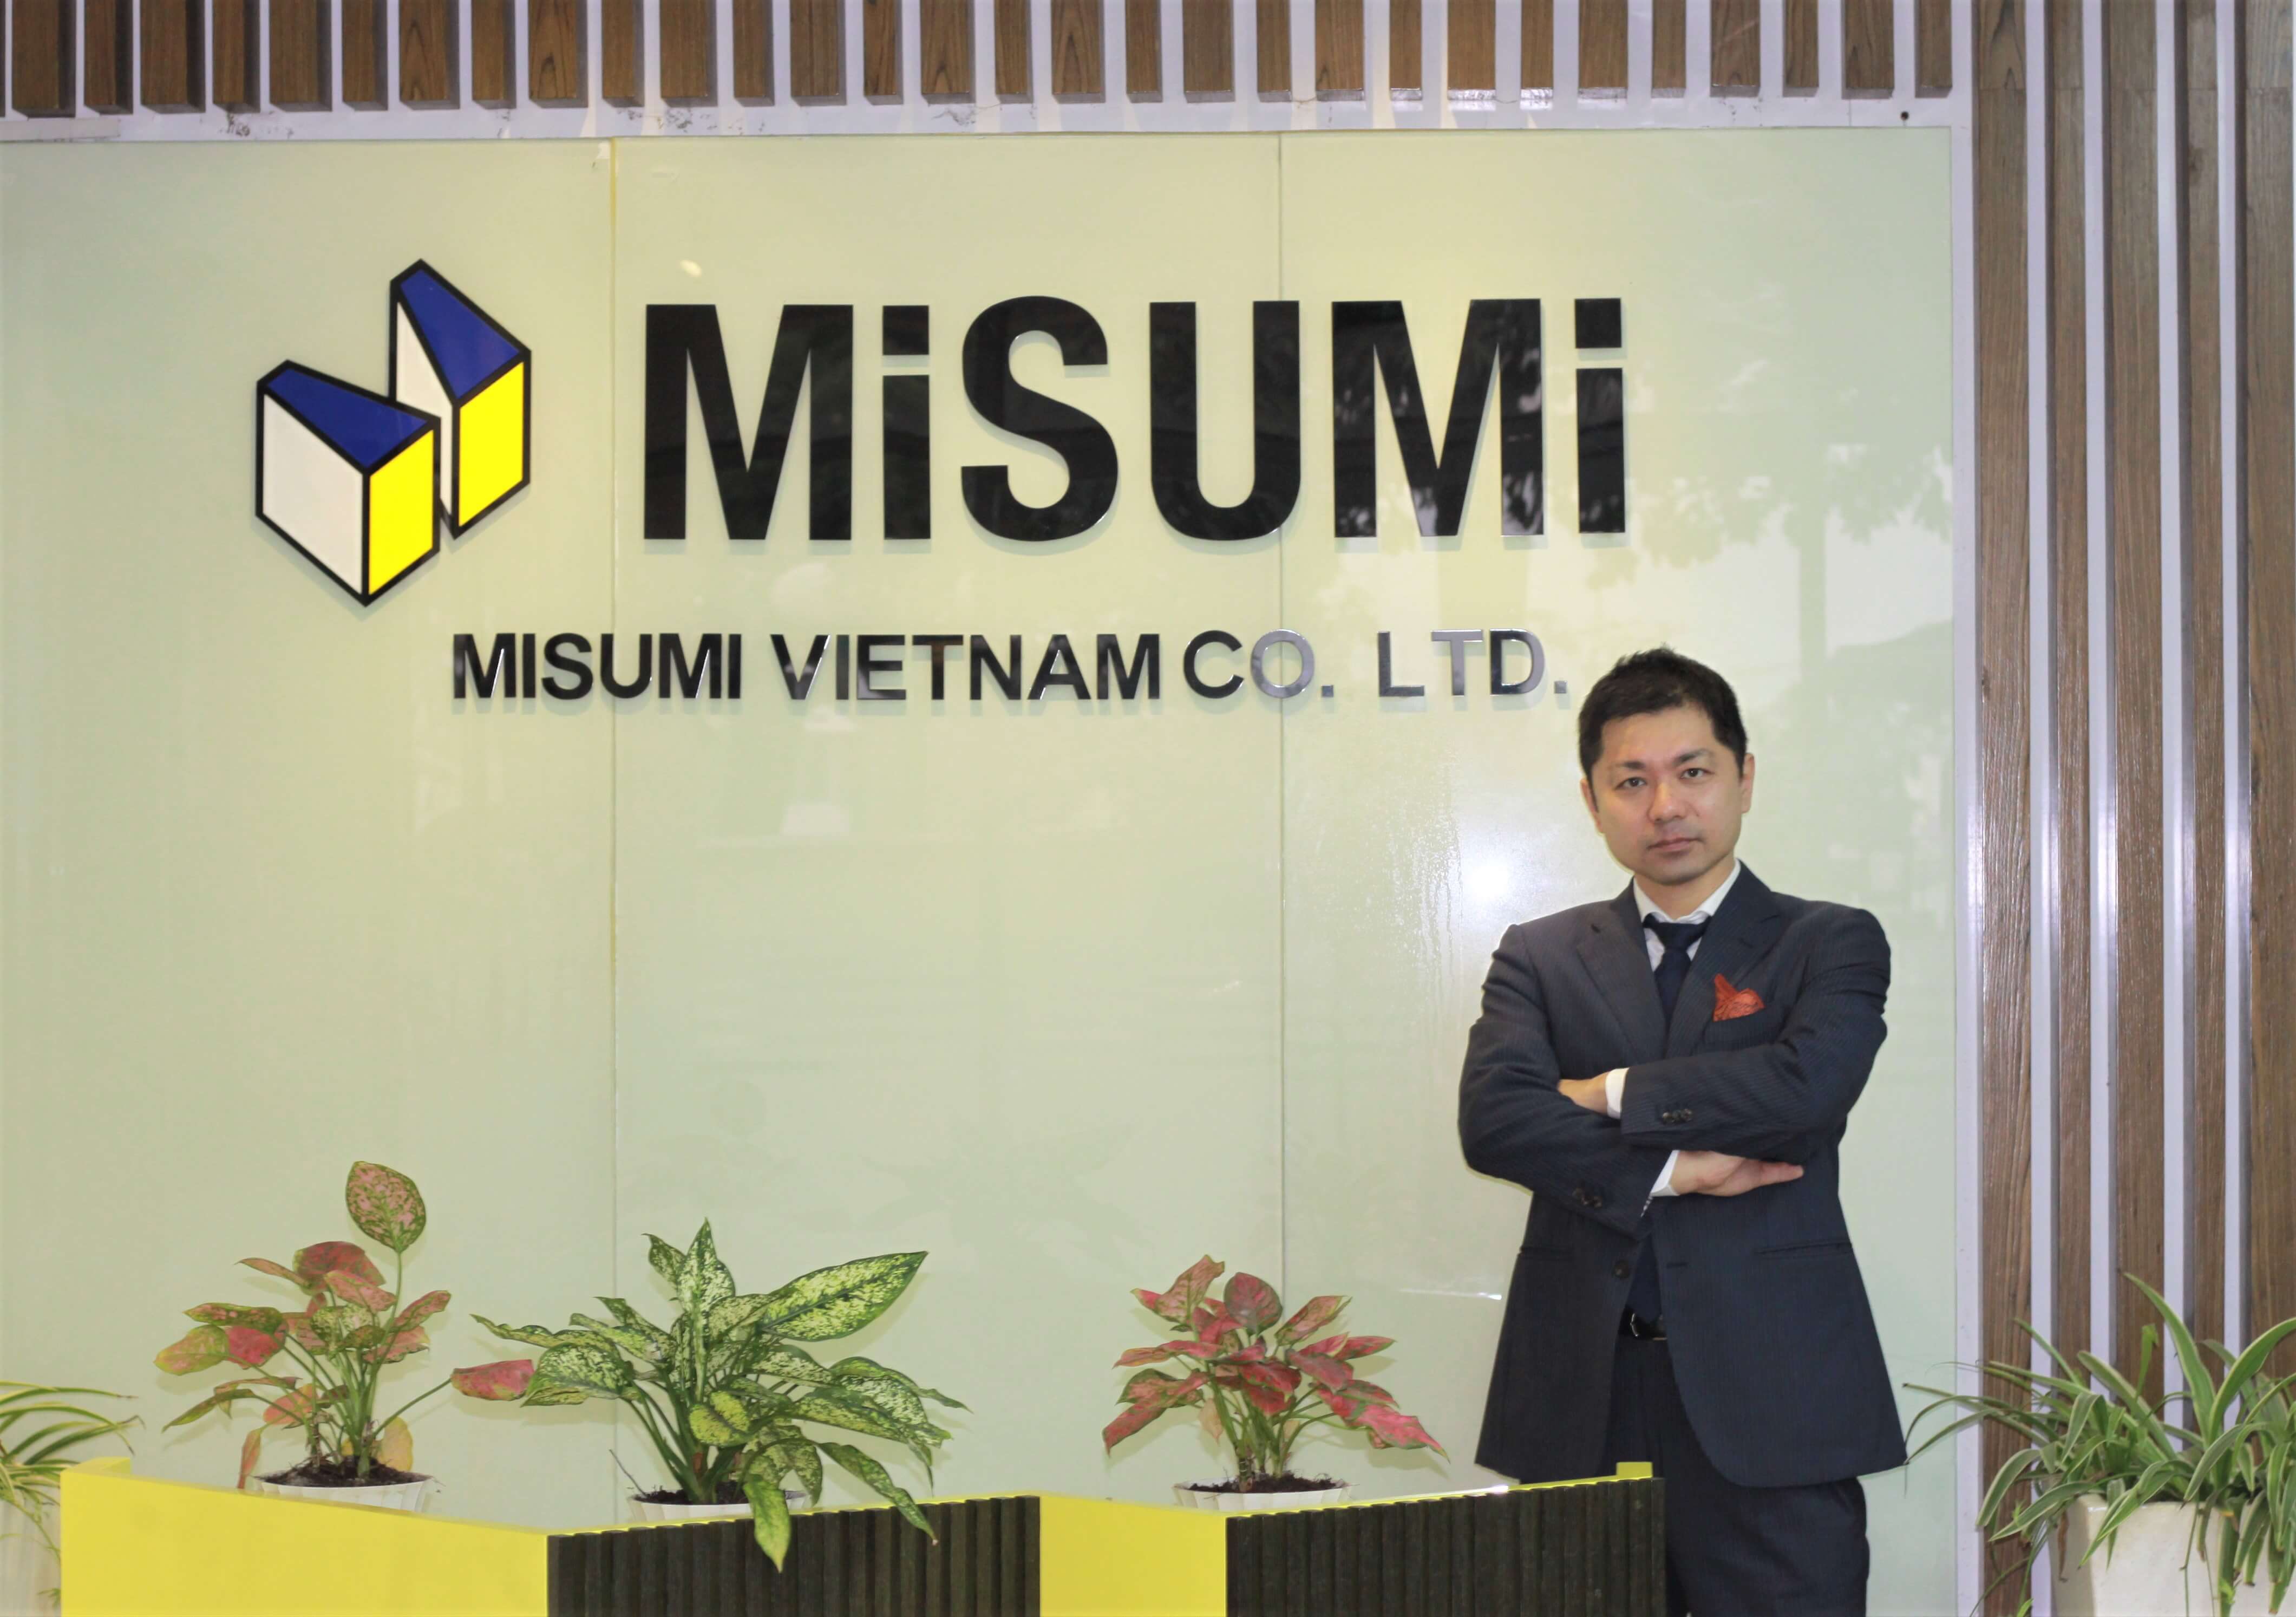 Jobs at Misumi Vietnam Co., Ltd